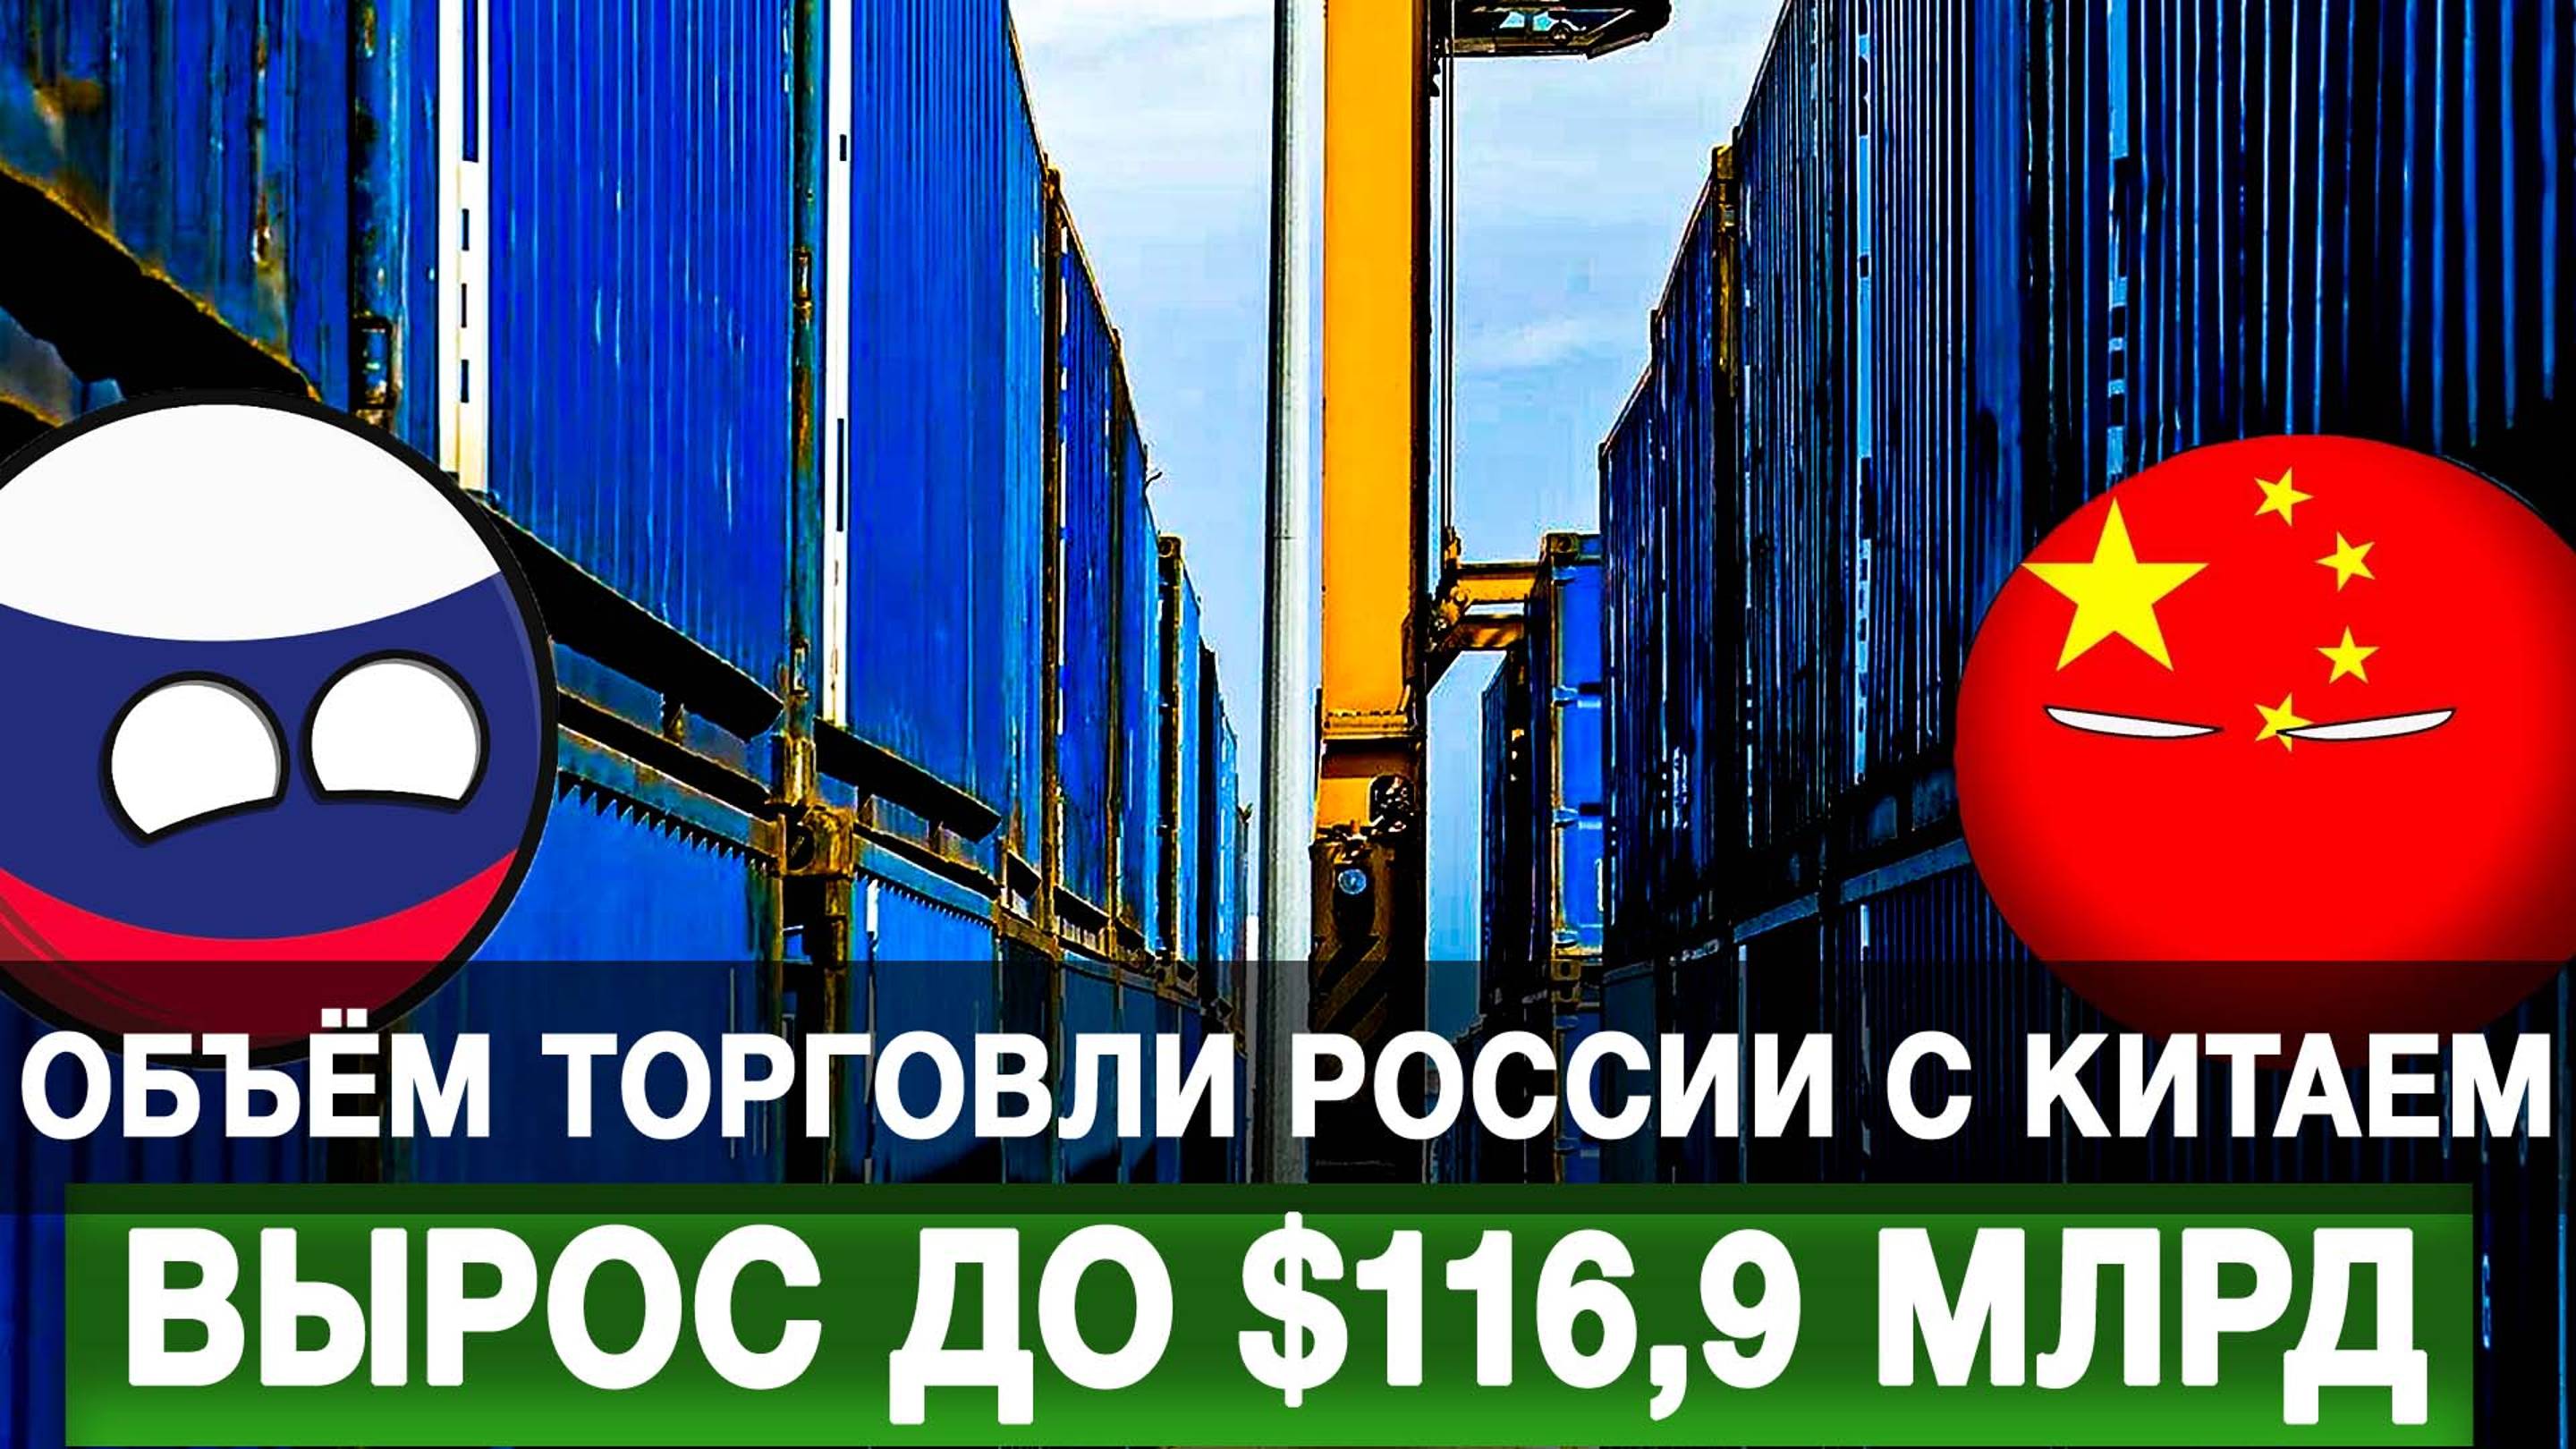 Объём торговли России с Китаем вырос до $116,9 млрд